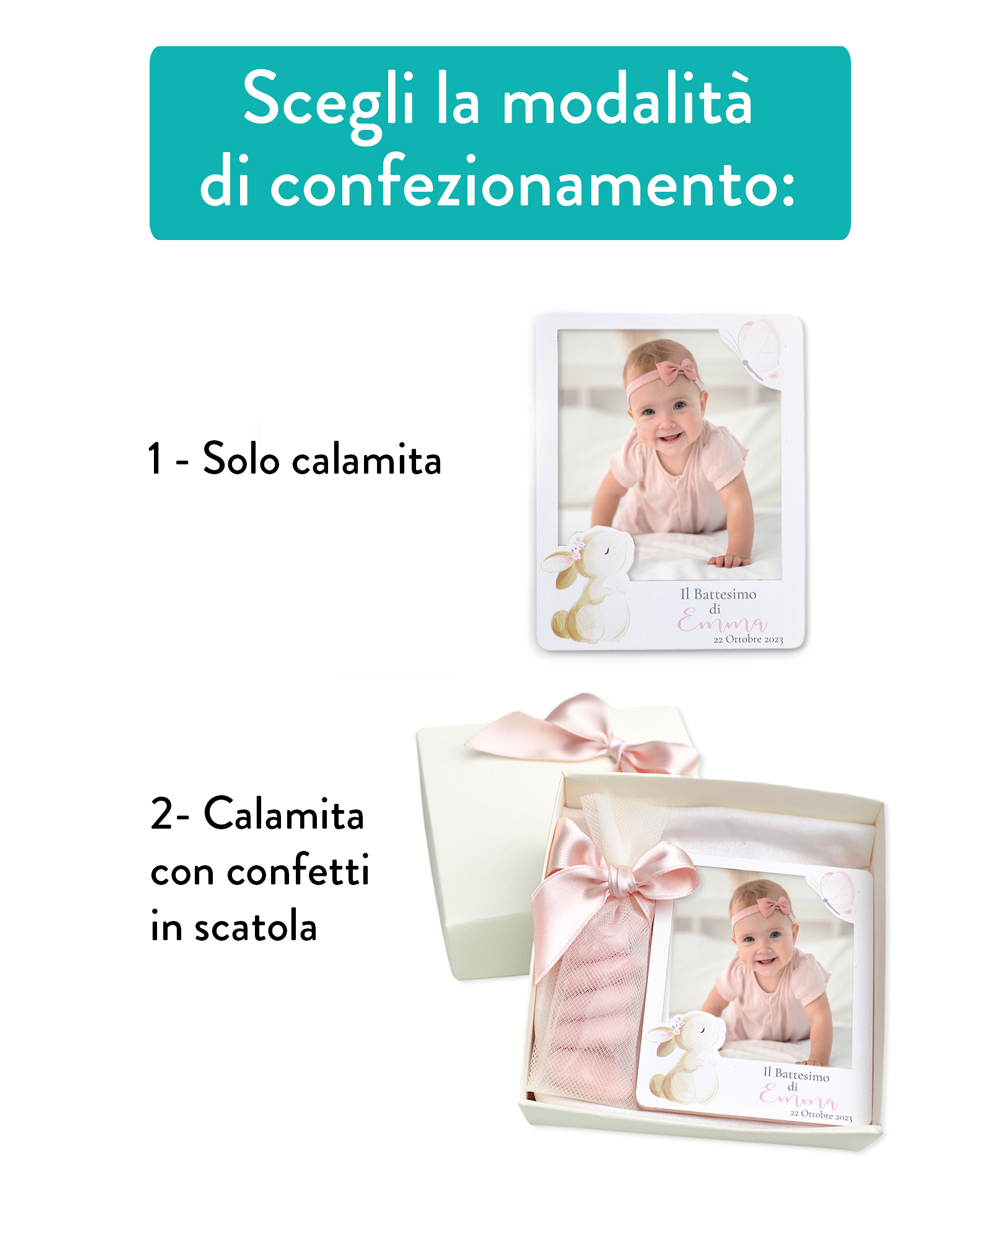 Calamita in Stile Polaroid Personalizzata con Nome, Data e Evento - Idea  Bomboniera per Battesimo, Nascita Bambina